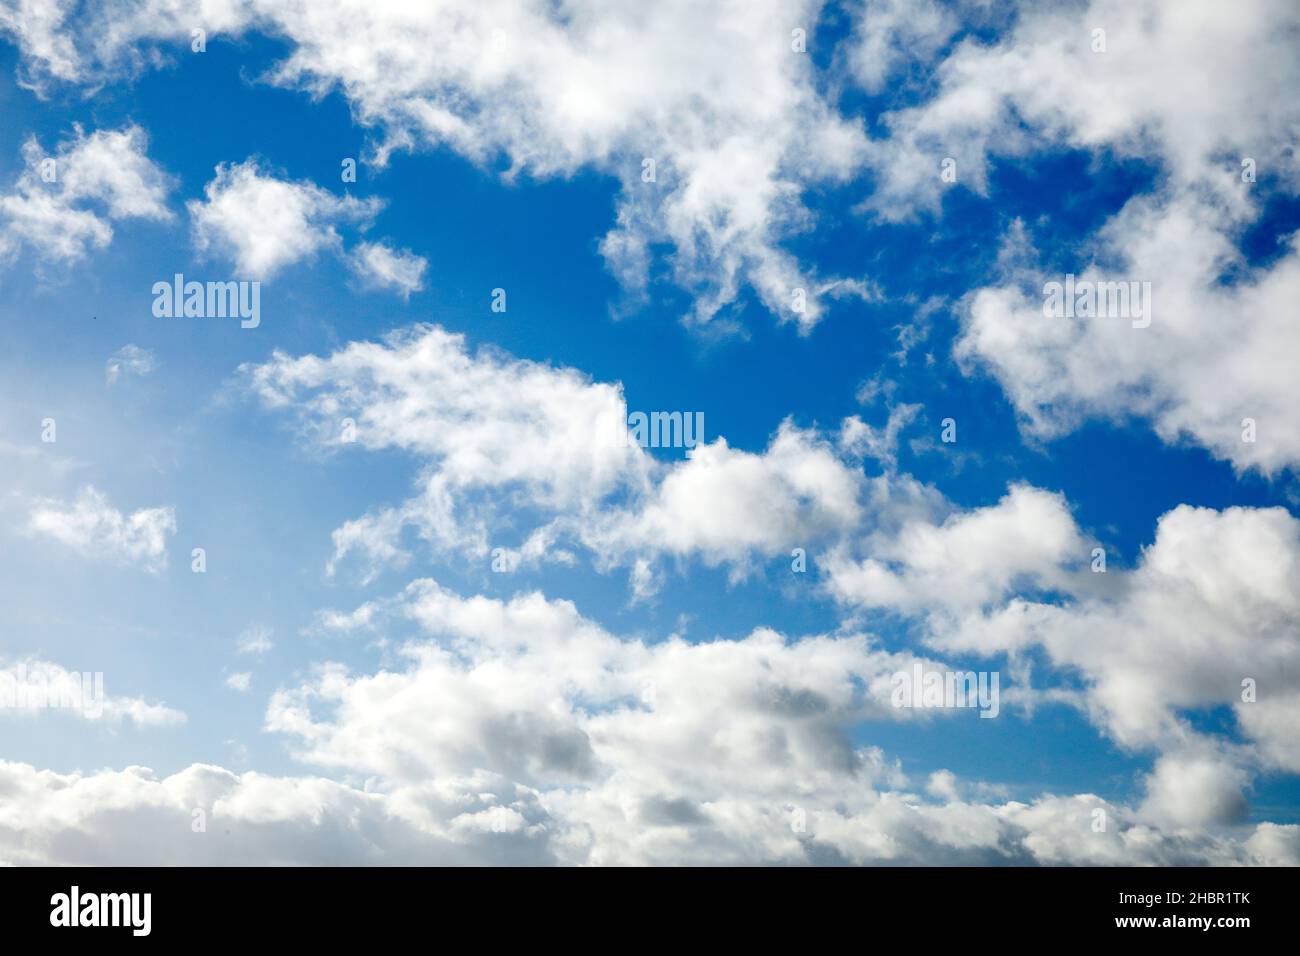 Schäfchen-. Schleier- und Haufenschichtwolken zieren bei starkem Wind den blauen Himmel Stock Photo